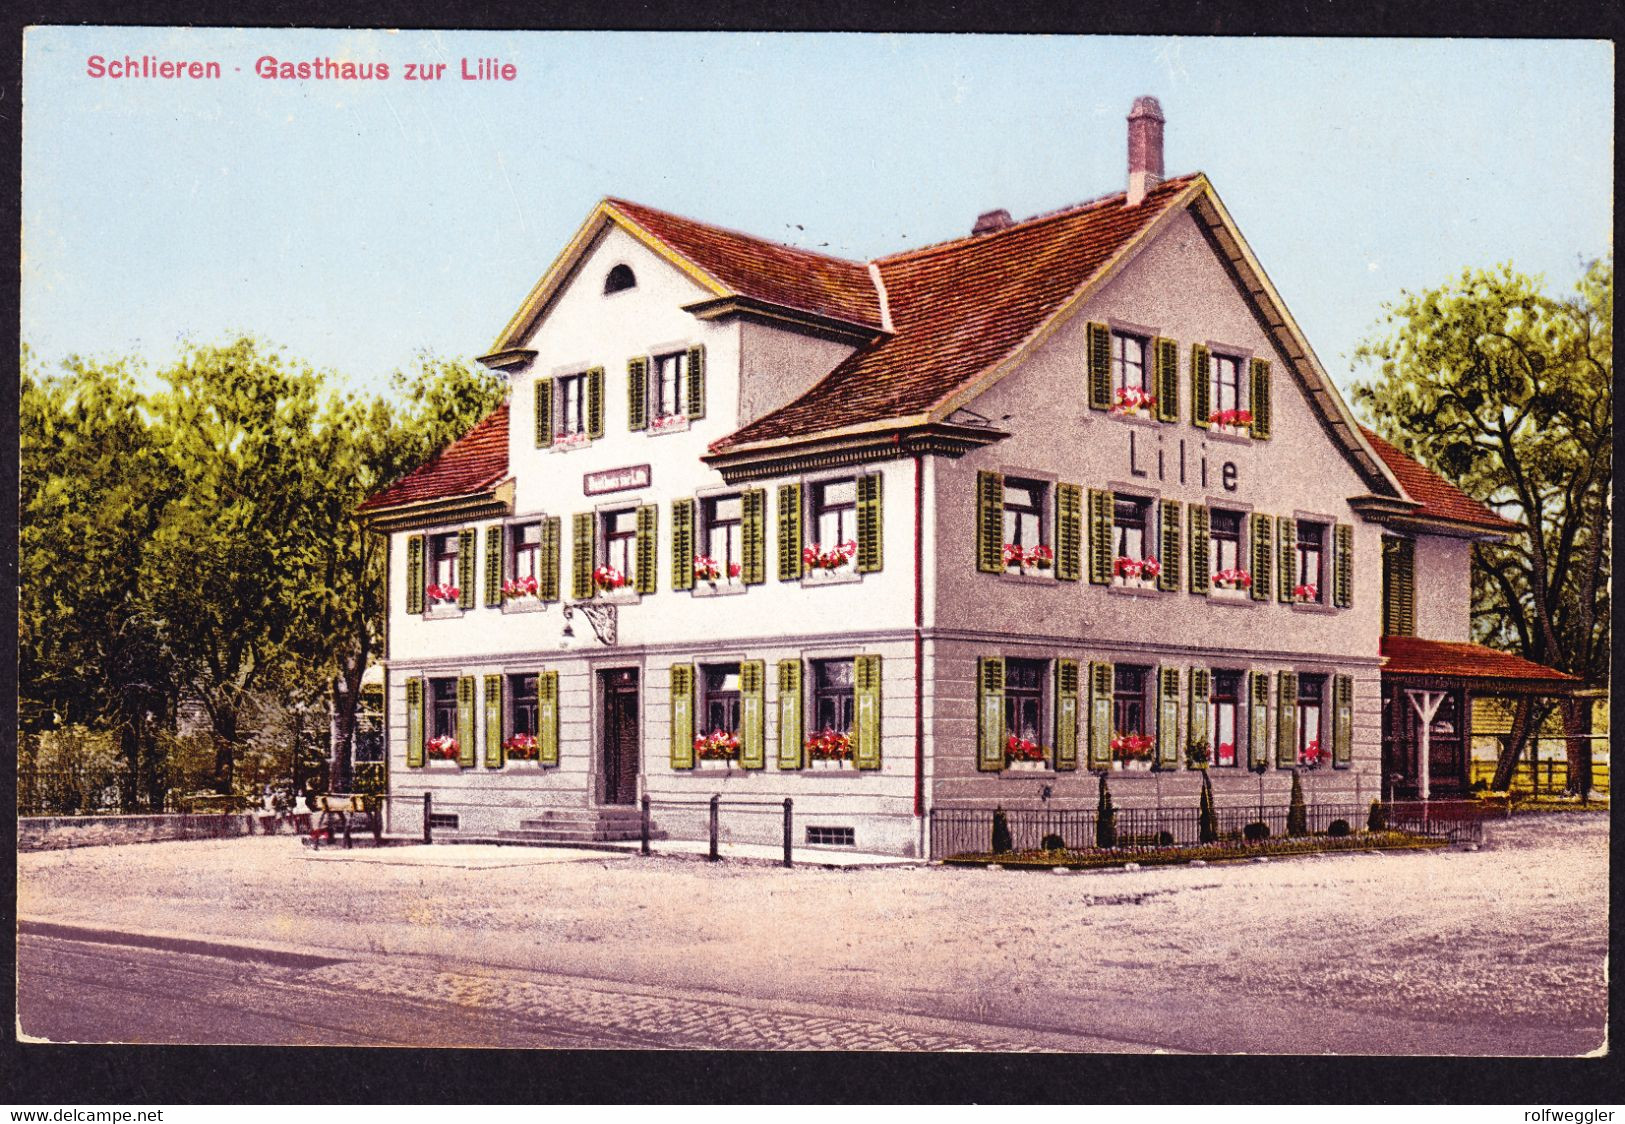 Um 1920 Ungelaufene AK Aus Schlieren. Gasthaus Zur Lilie. Rückseitig Minim Fleckig. - Schlieren